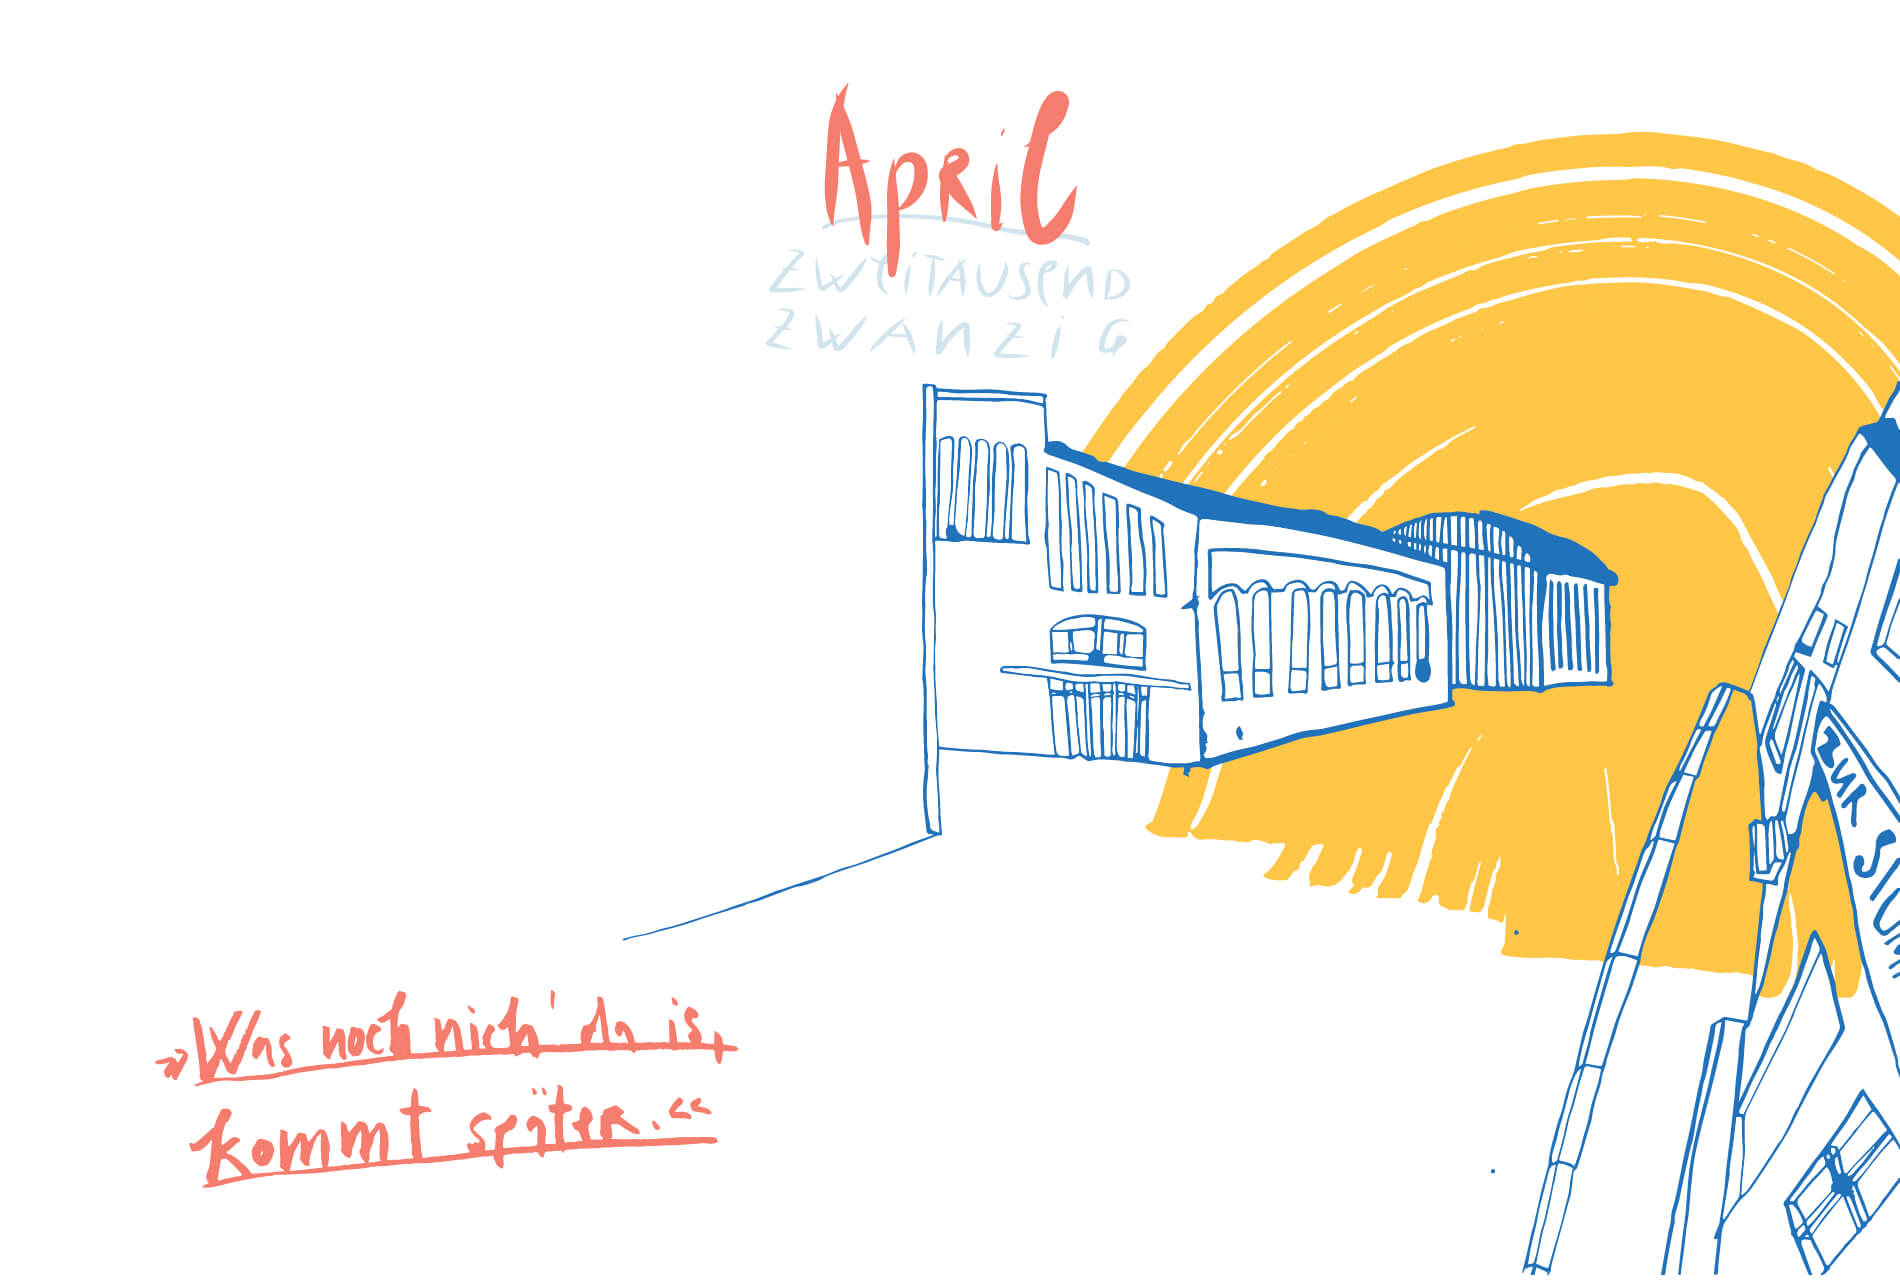 Matrosenhunde Illustration Zeichnung Illustratorin Text Prosa Monatskalender April, was noch nichts da ist, kommt später